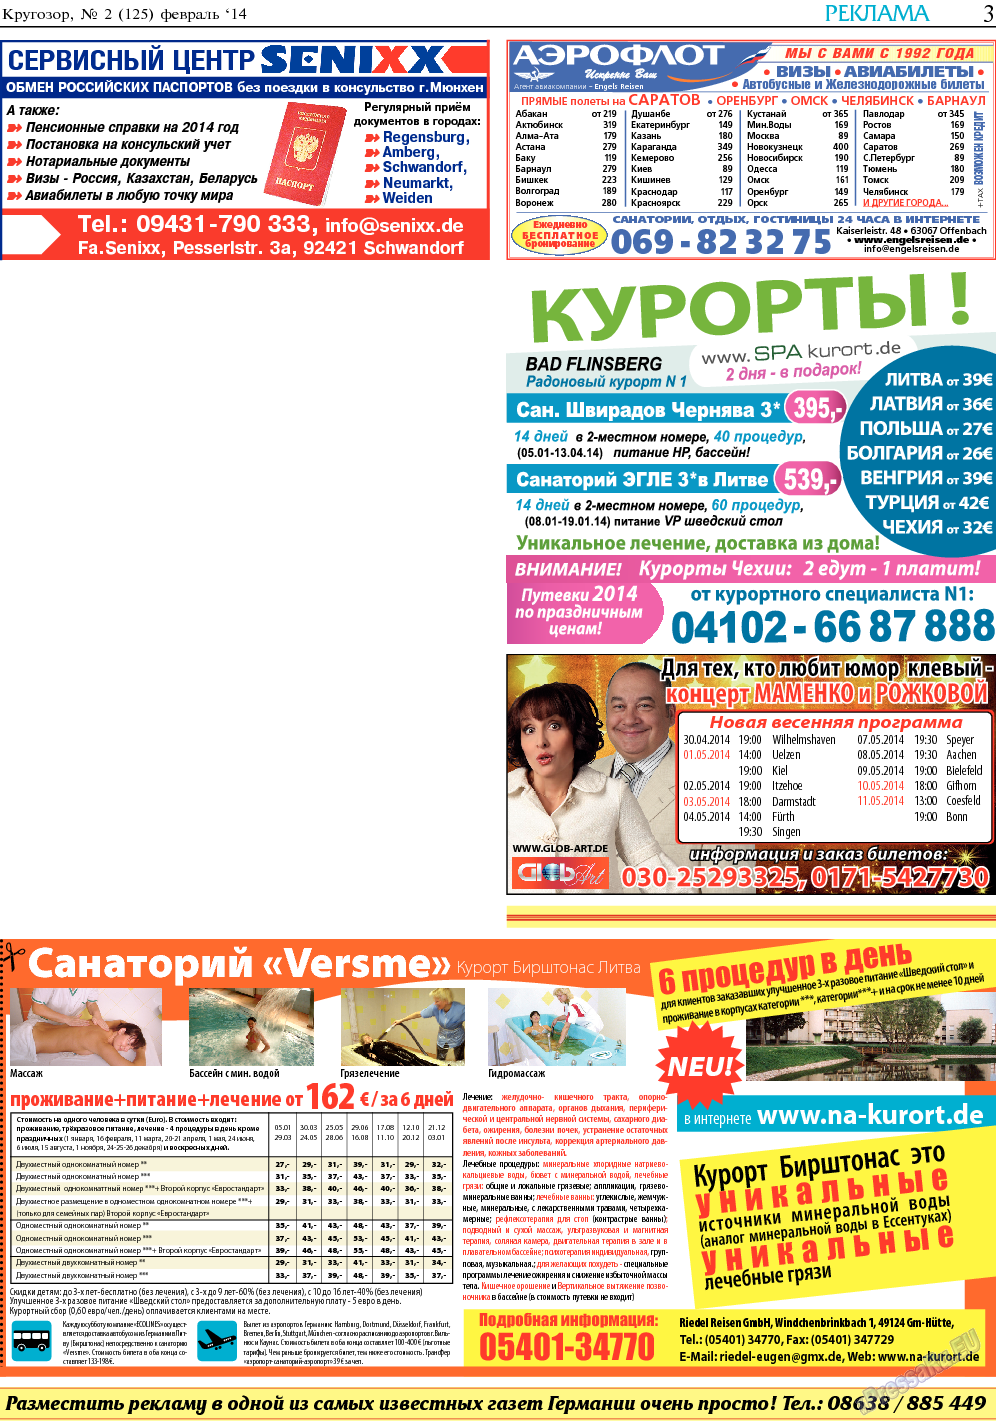 Кругозор, газета. 2014 №2 стр.3